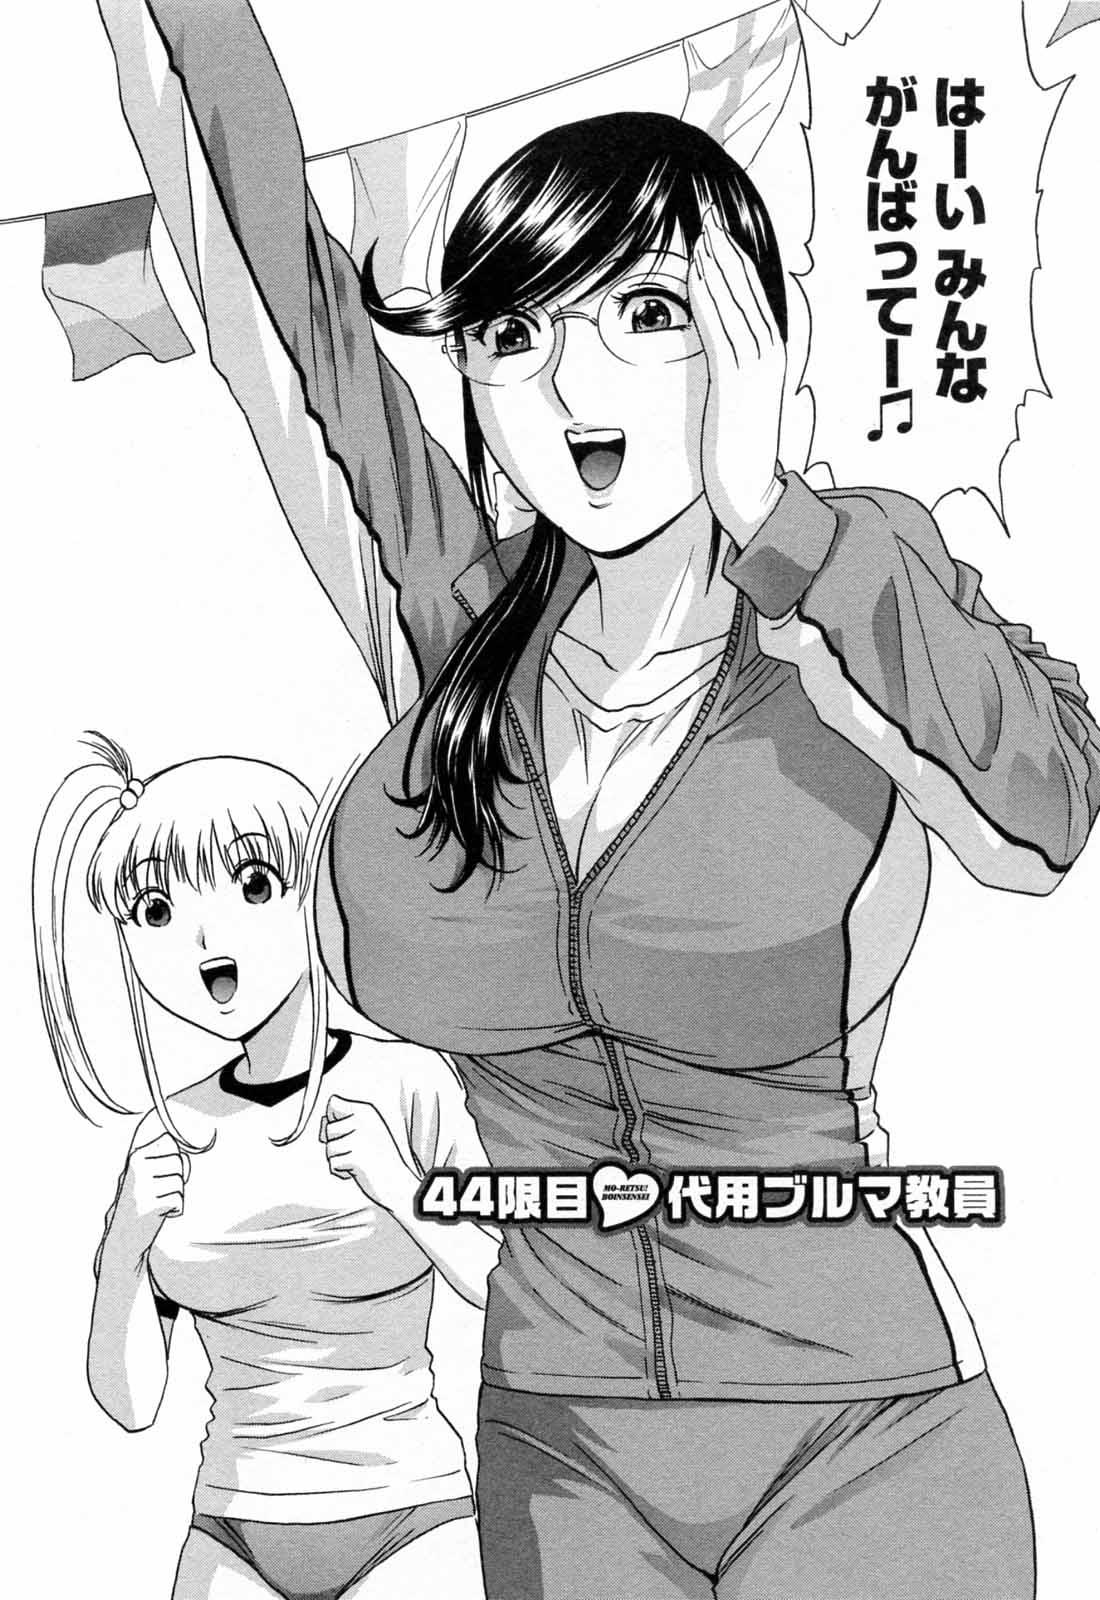 [Hidemaru] Mo-Retsu! Boin Sensei (Boing Boing Teacher) Vol.5 155